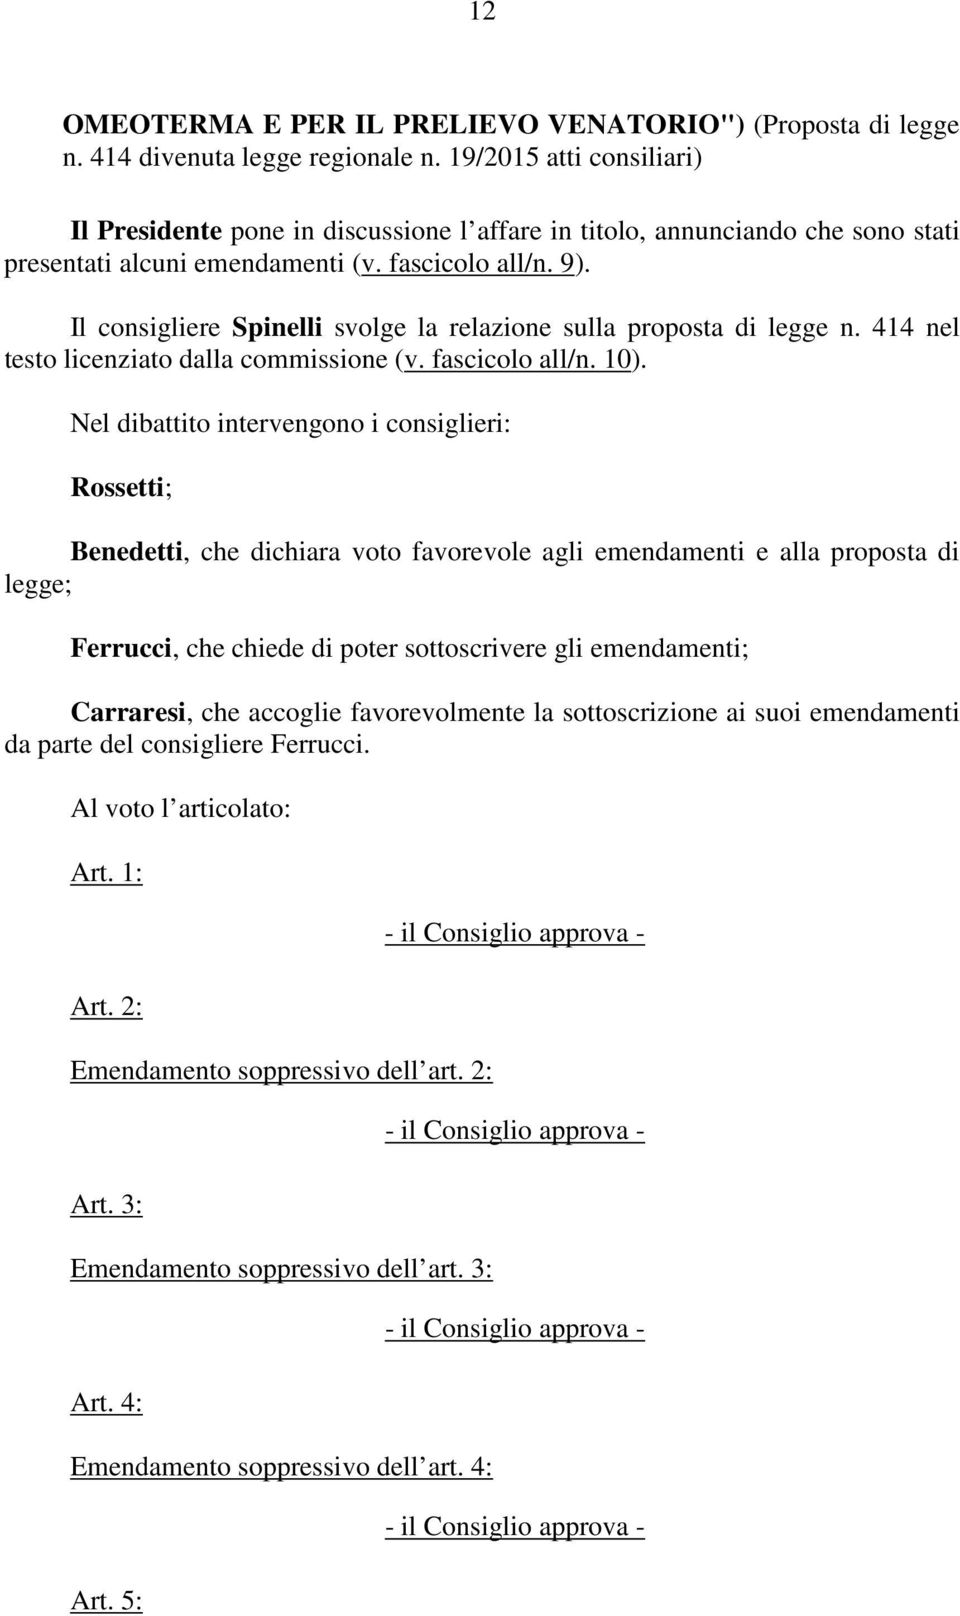 Il consigliere Spinelli svolge la relazione sulla proposta di legge n. 414 nel testo licenziato dalla commissione (v. fascicolo all/n. 10).